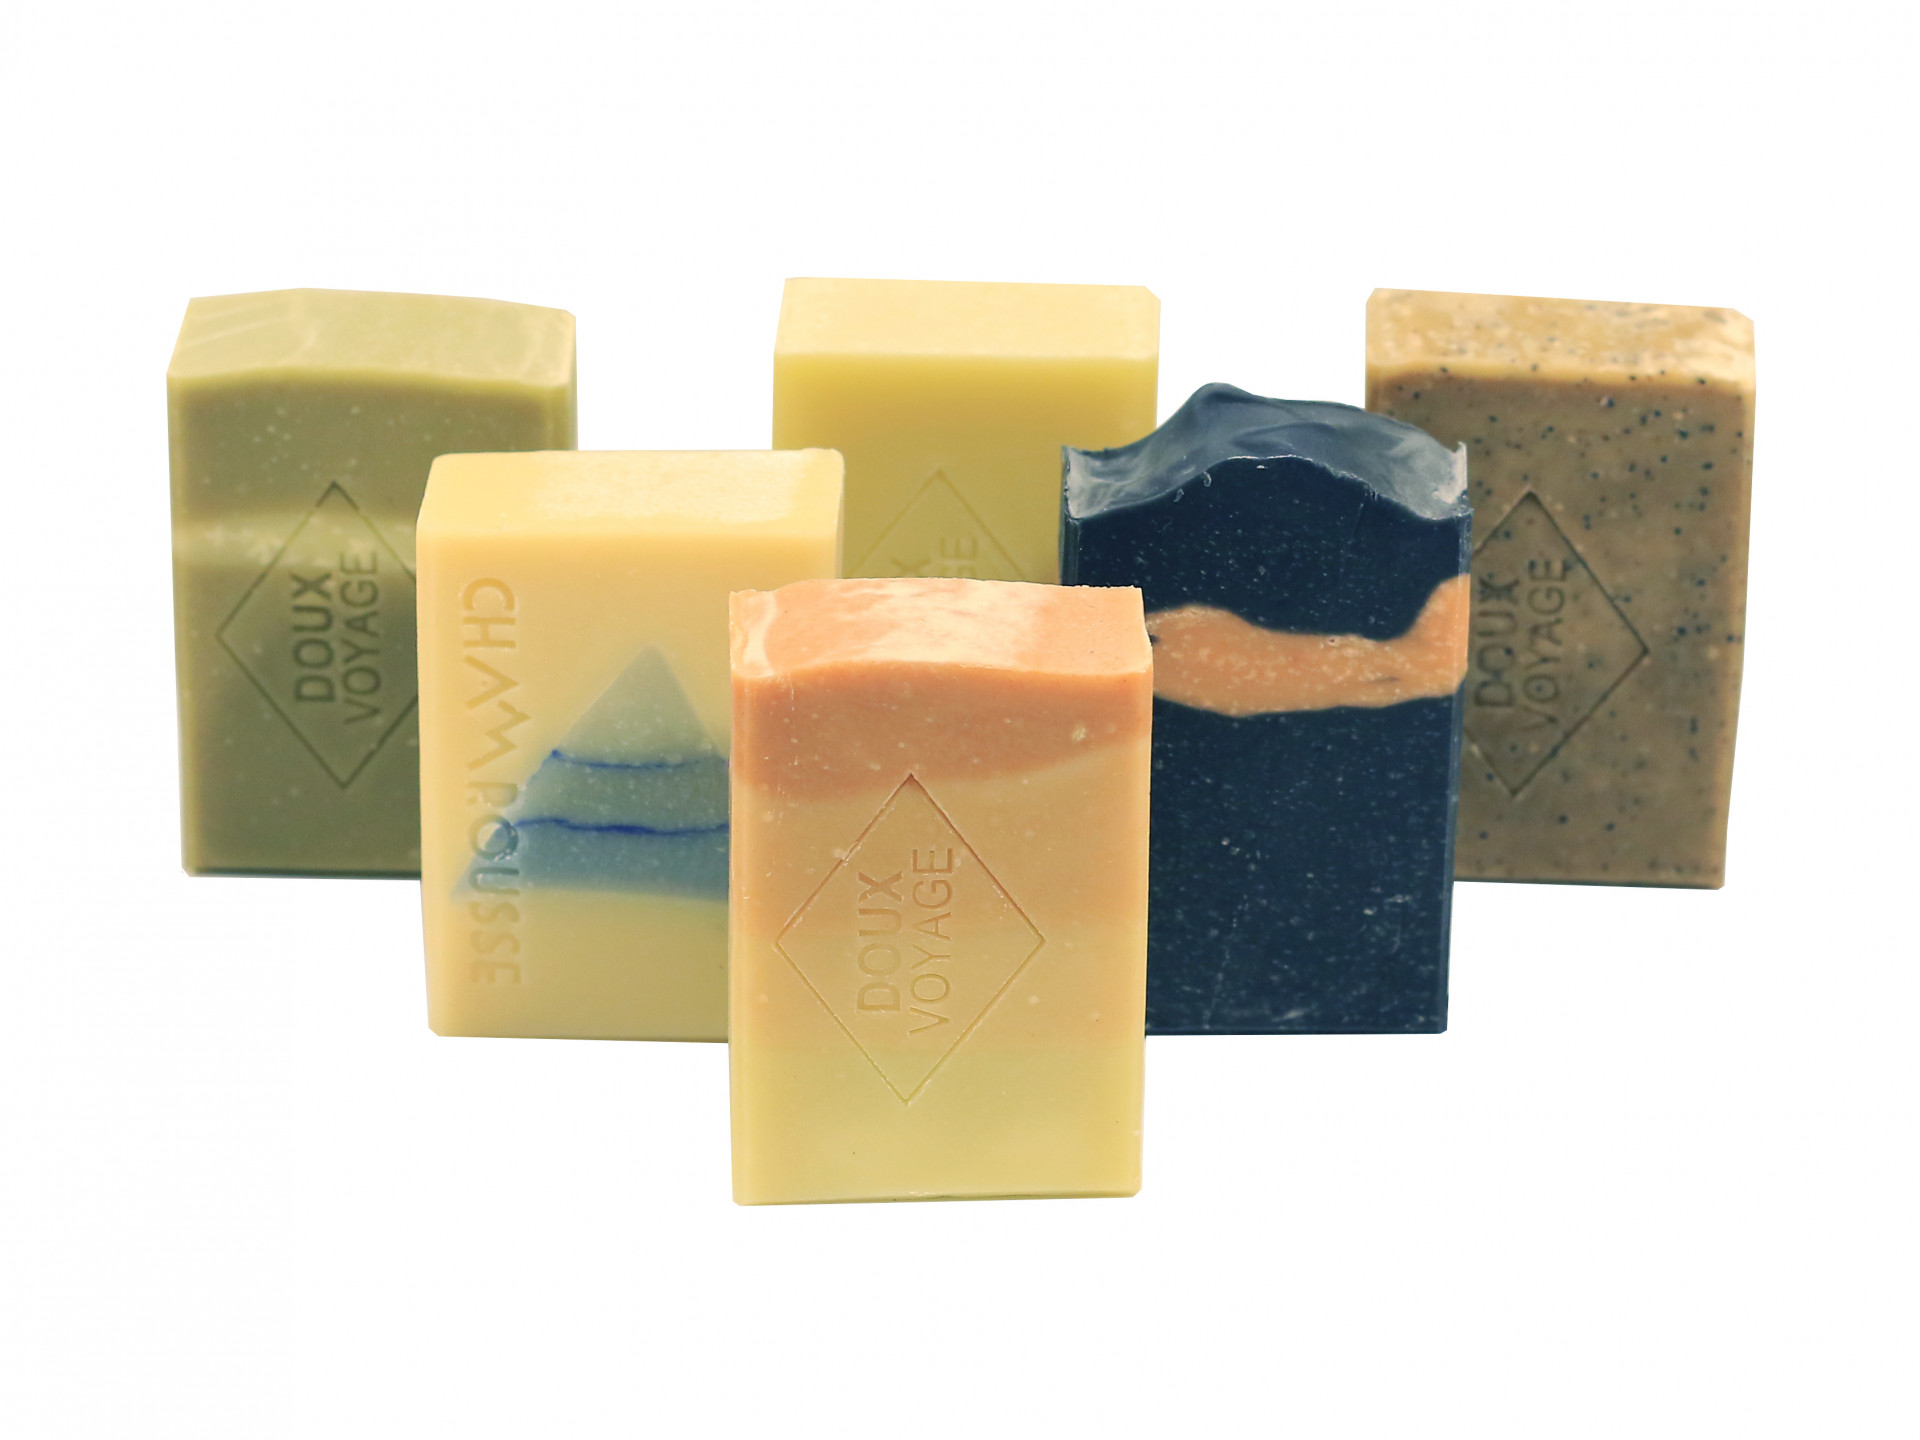 Doux Voyage soap range